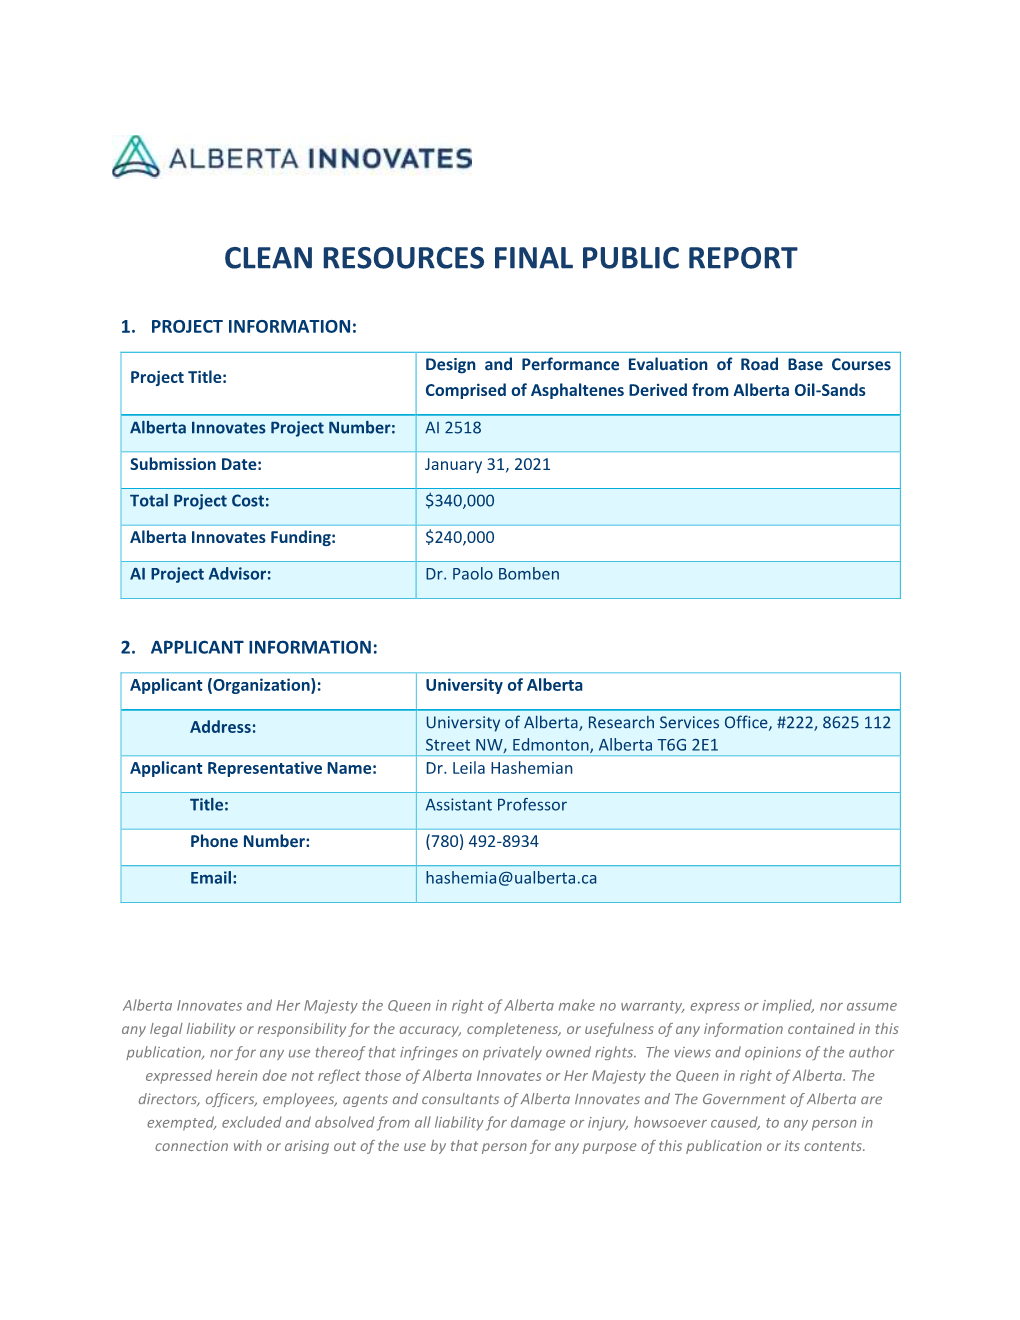 Clean Resources Final Public Report